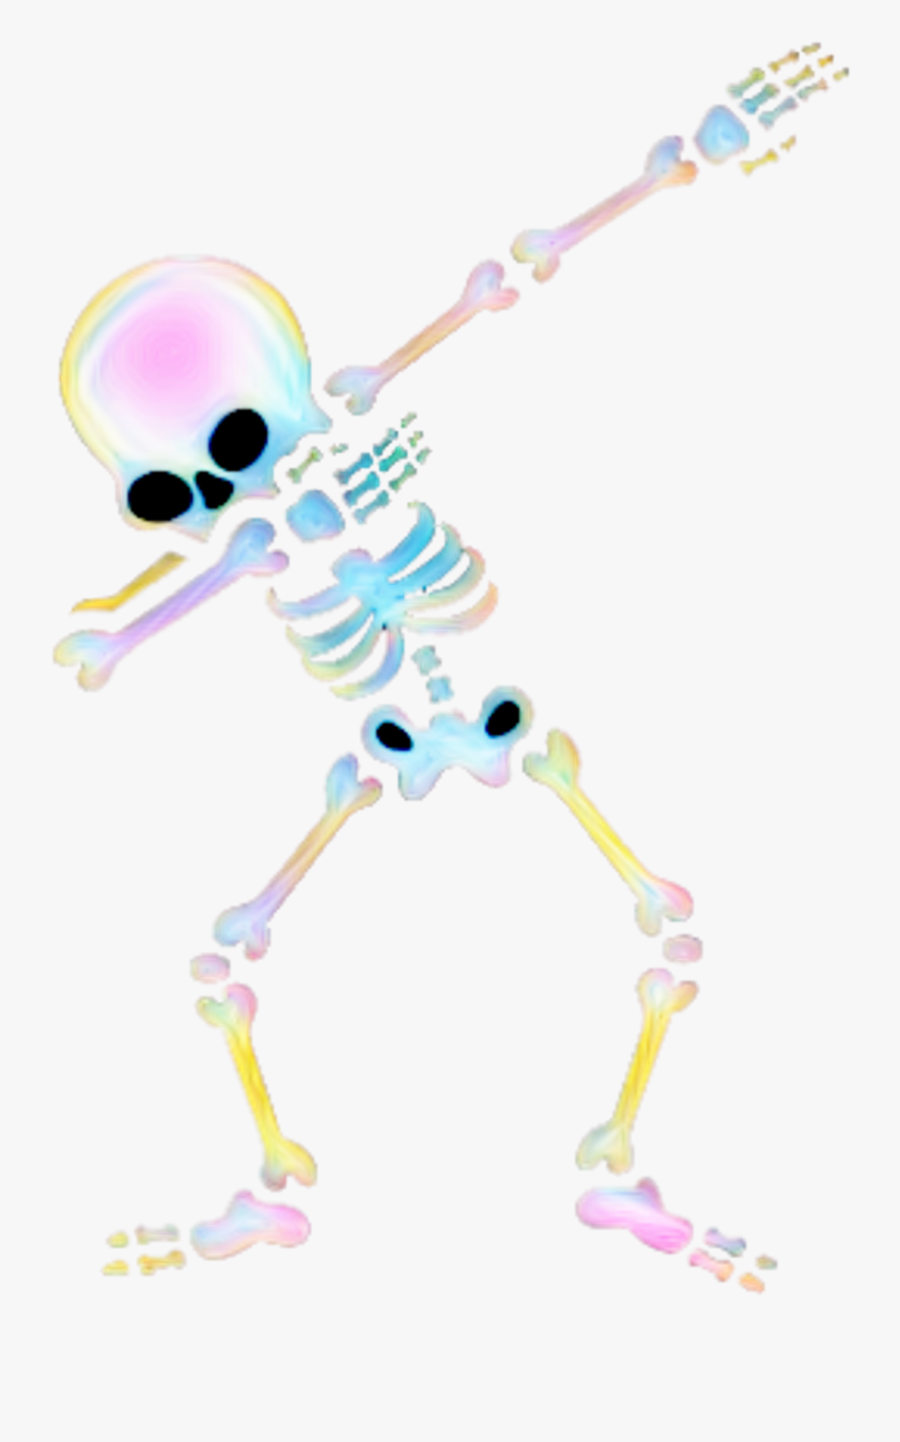 #skeleton #dab #dabbing #freetoedit #ftefunnyskeletons - Dabbing Skeleton Transparent Background, Transparent Clipart